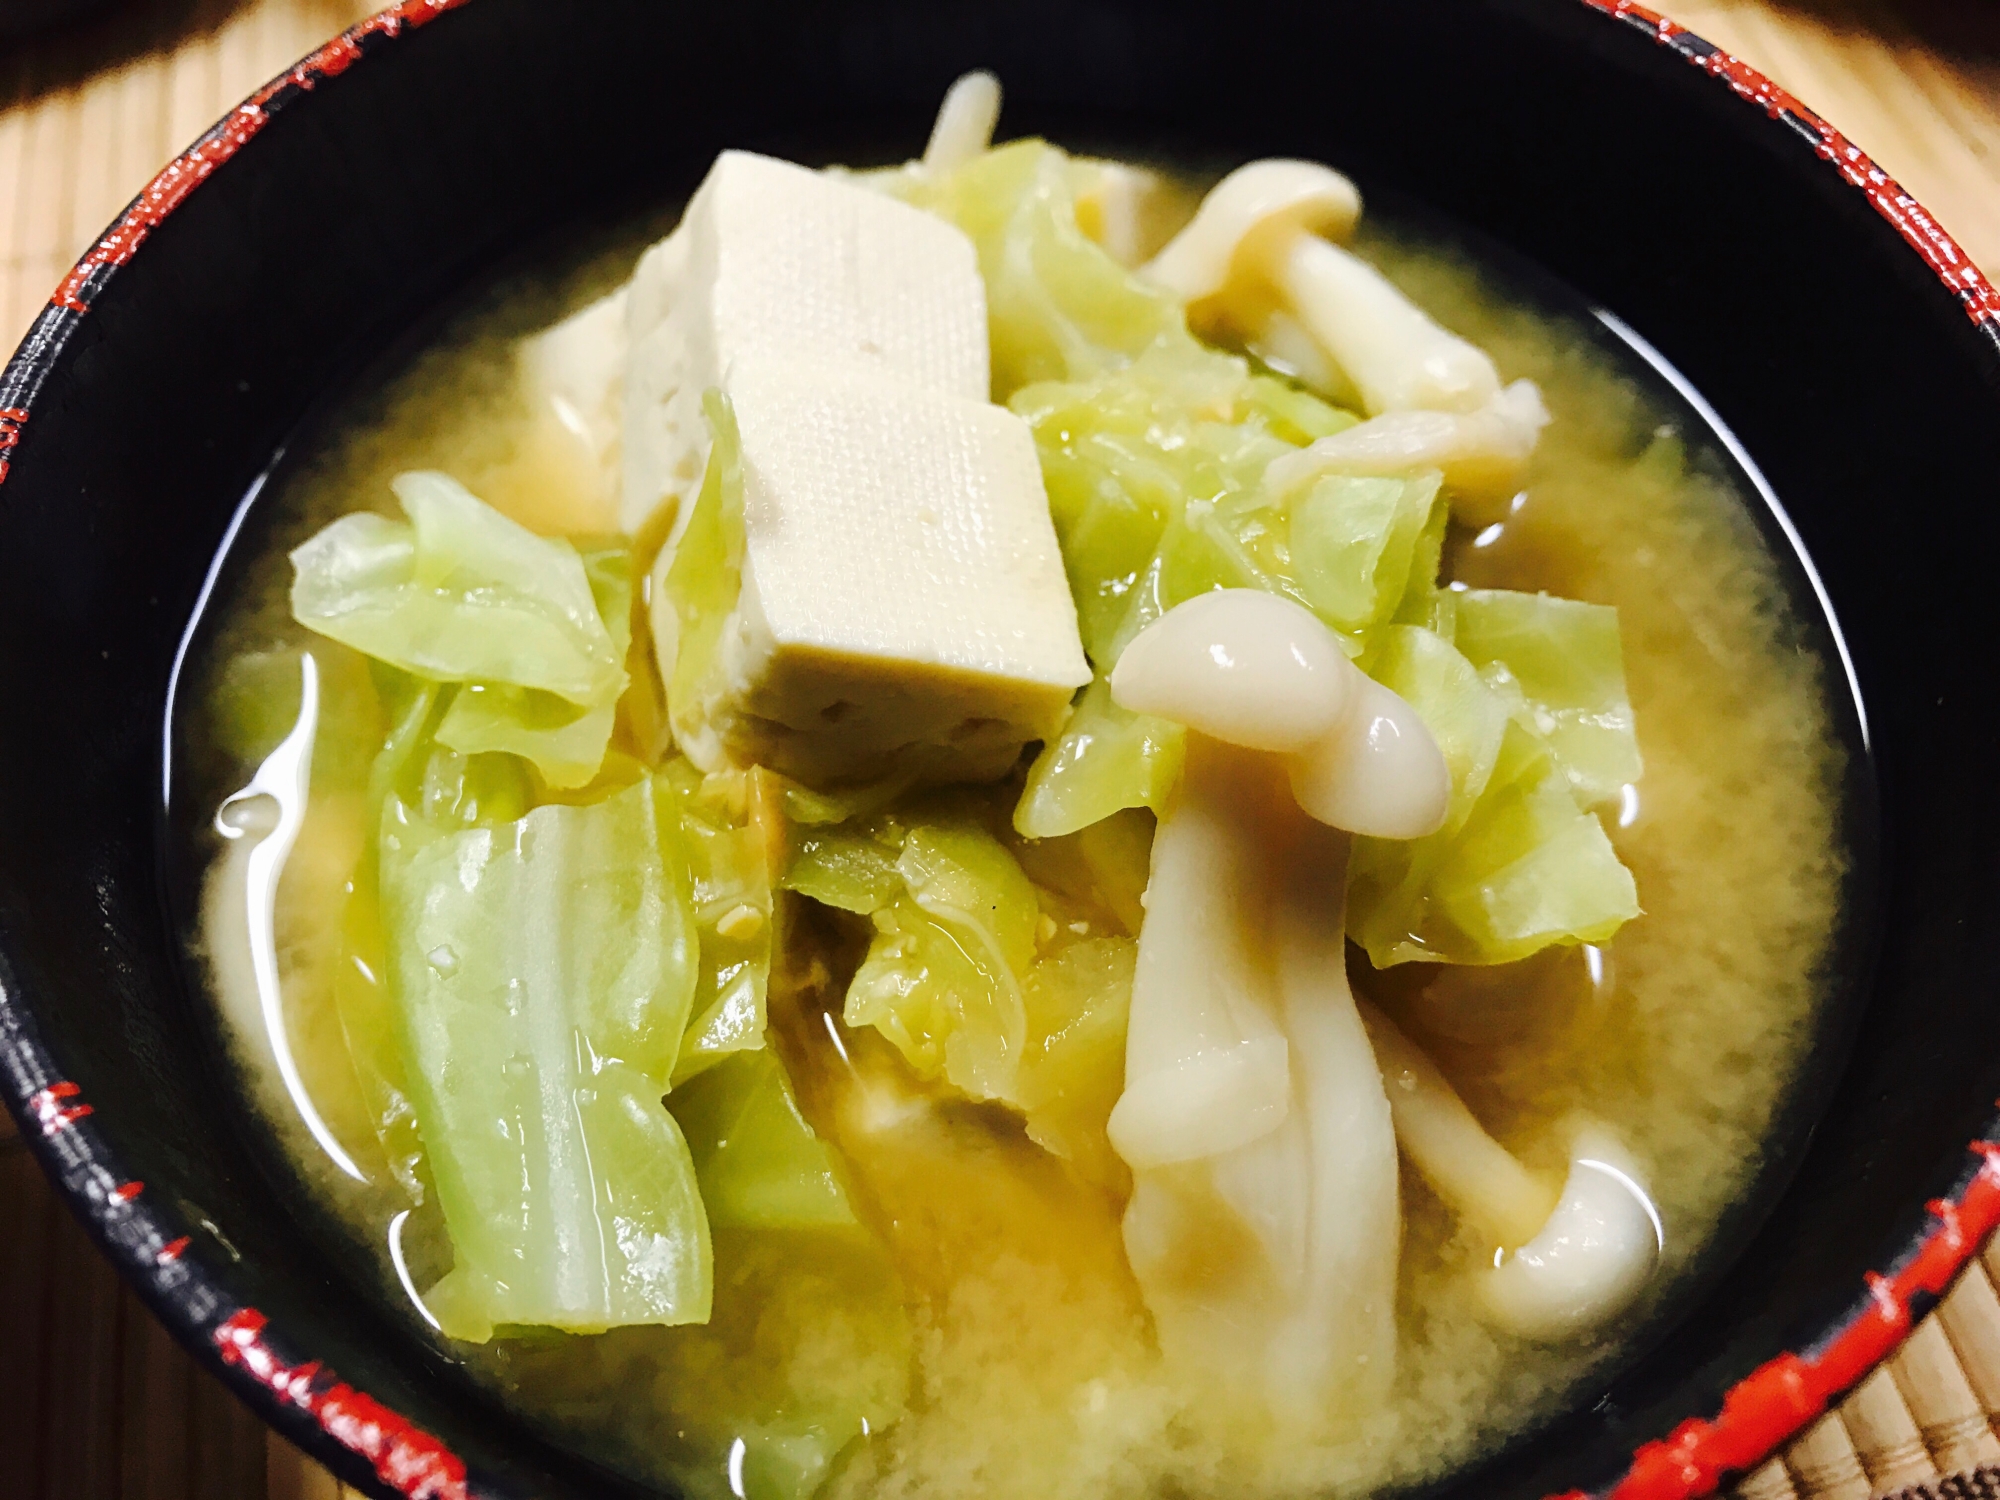 キャベツ&ブナピー&豆腐の味噌汁